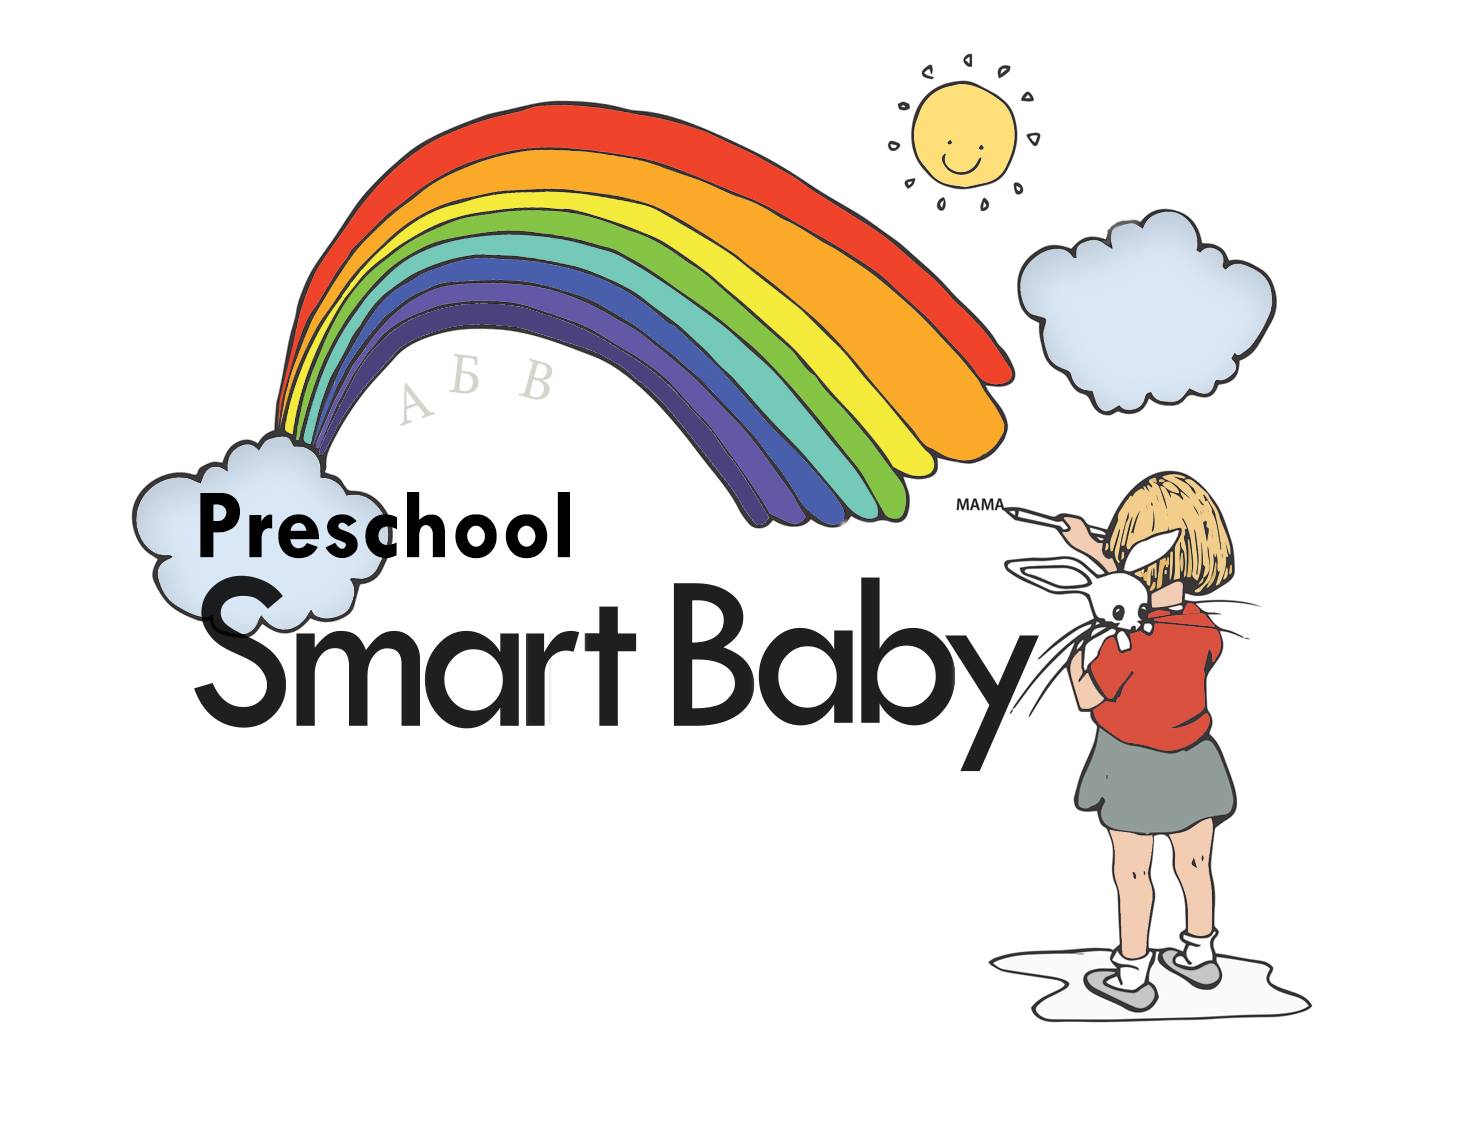 Smart Baby Preschool